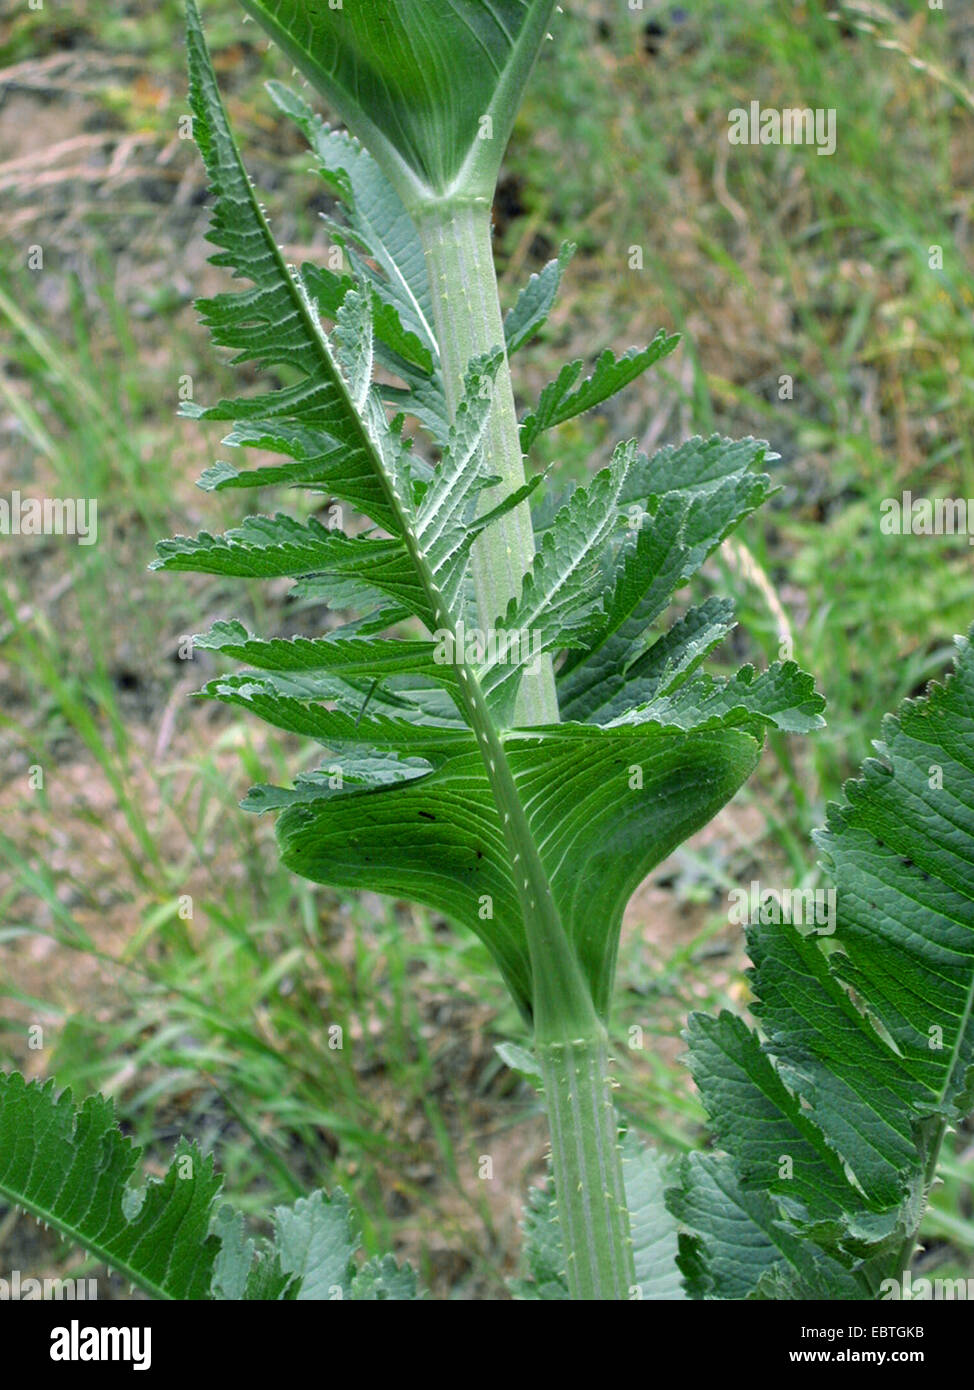 Cortar-hojas teasel, cutleaf teasel, corte de hoja (Dipsacus laciniatus teasel), hoja, Alemania Foto de stock